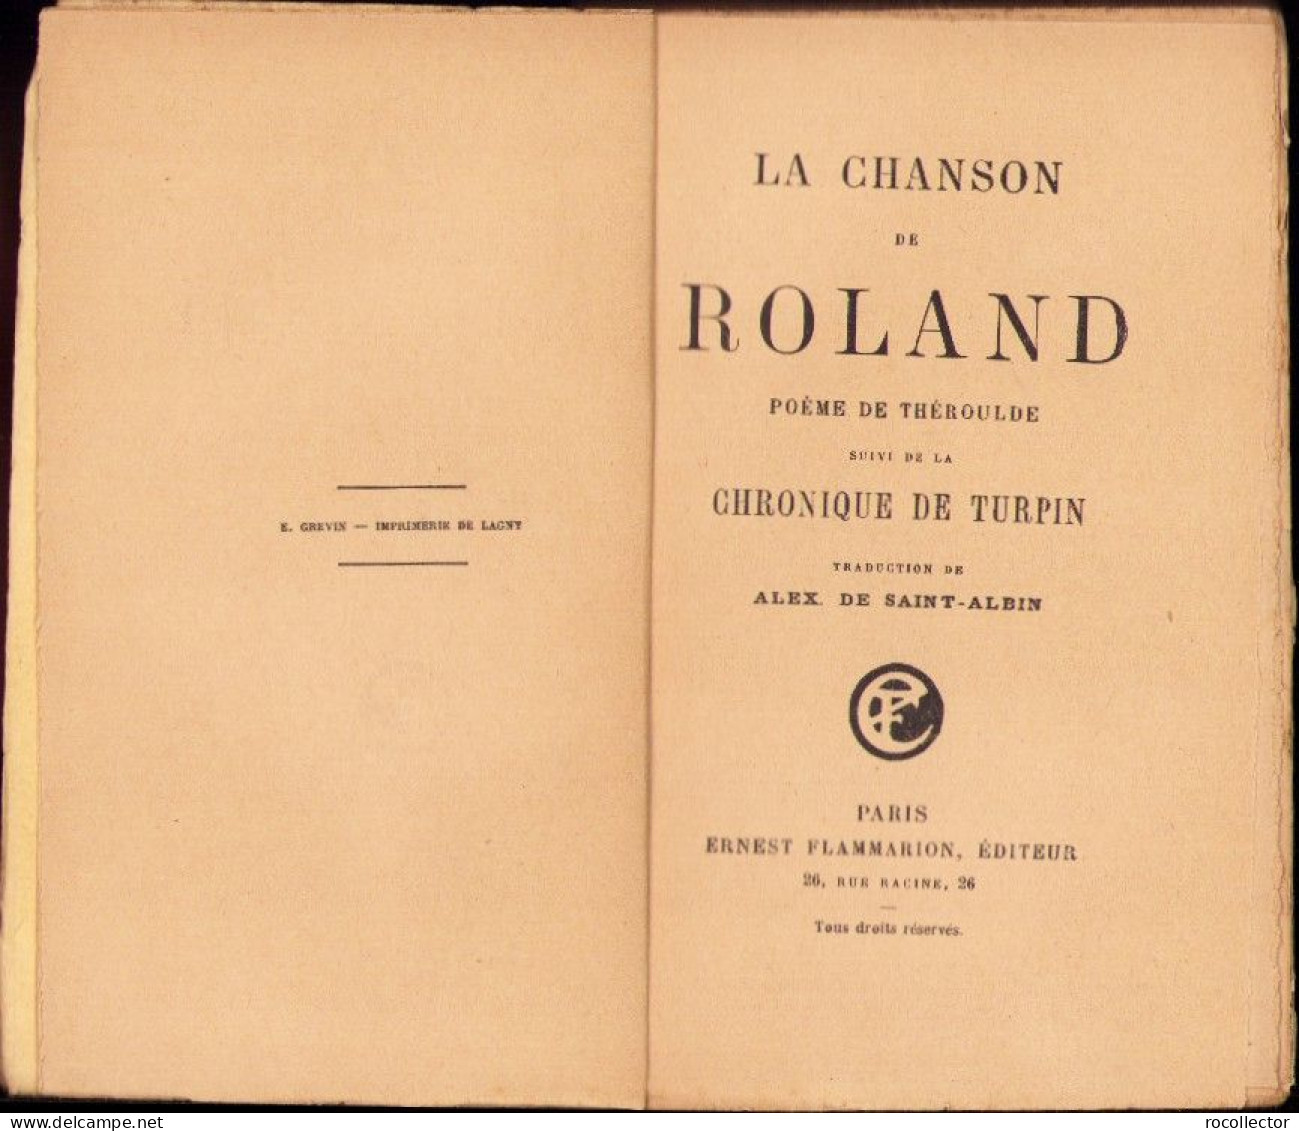 La Chanson De Roland Poeme De Theroulde Suivi De La Chronique De Turpin, Paris C4318N - Old Books